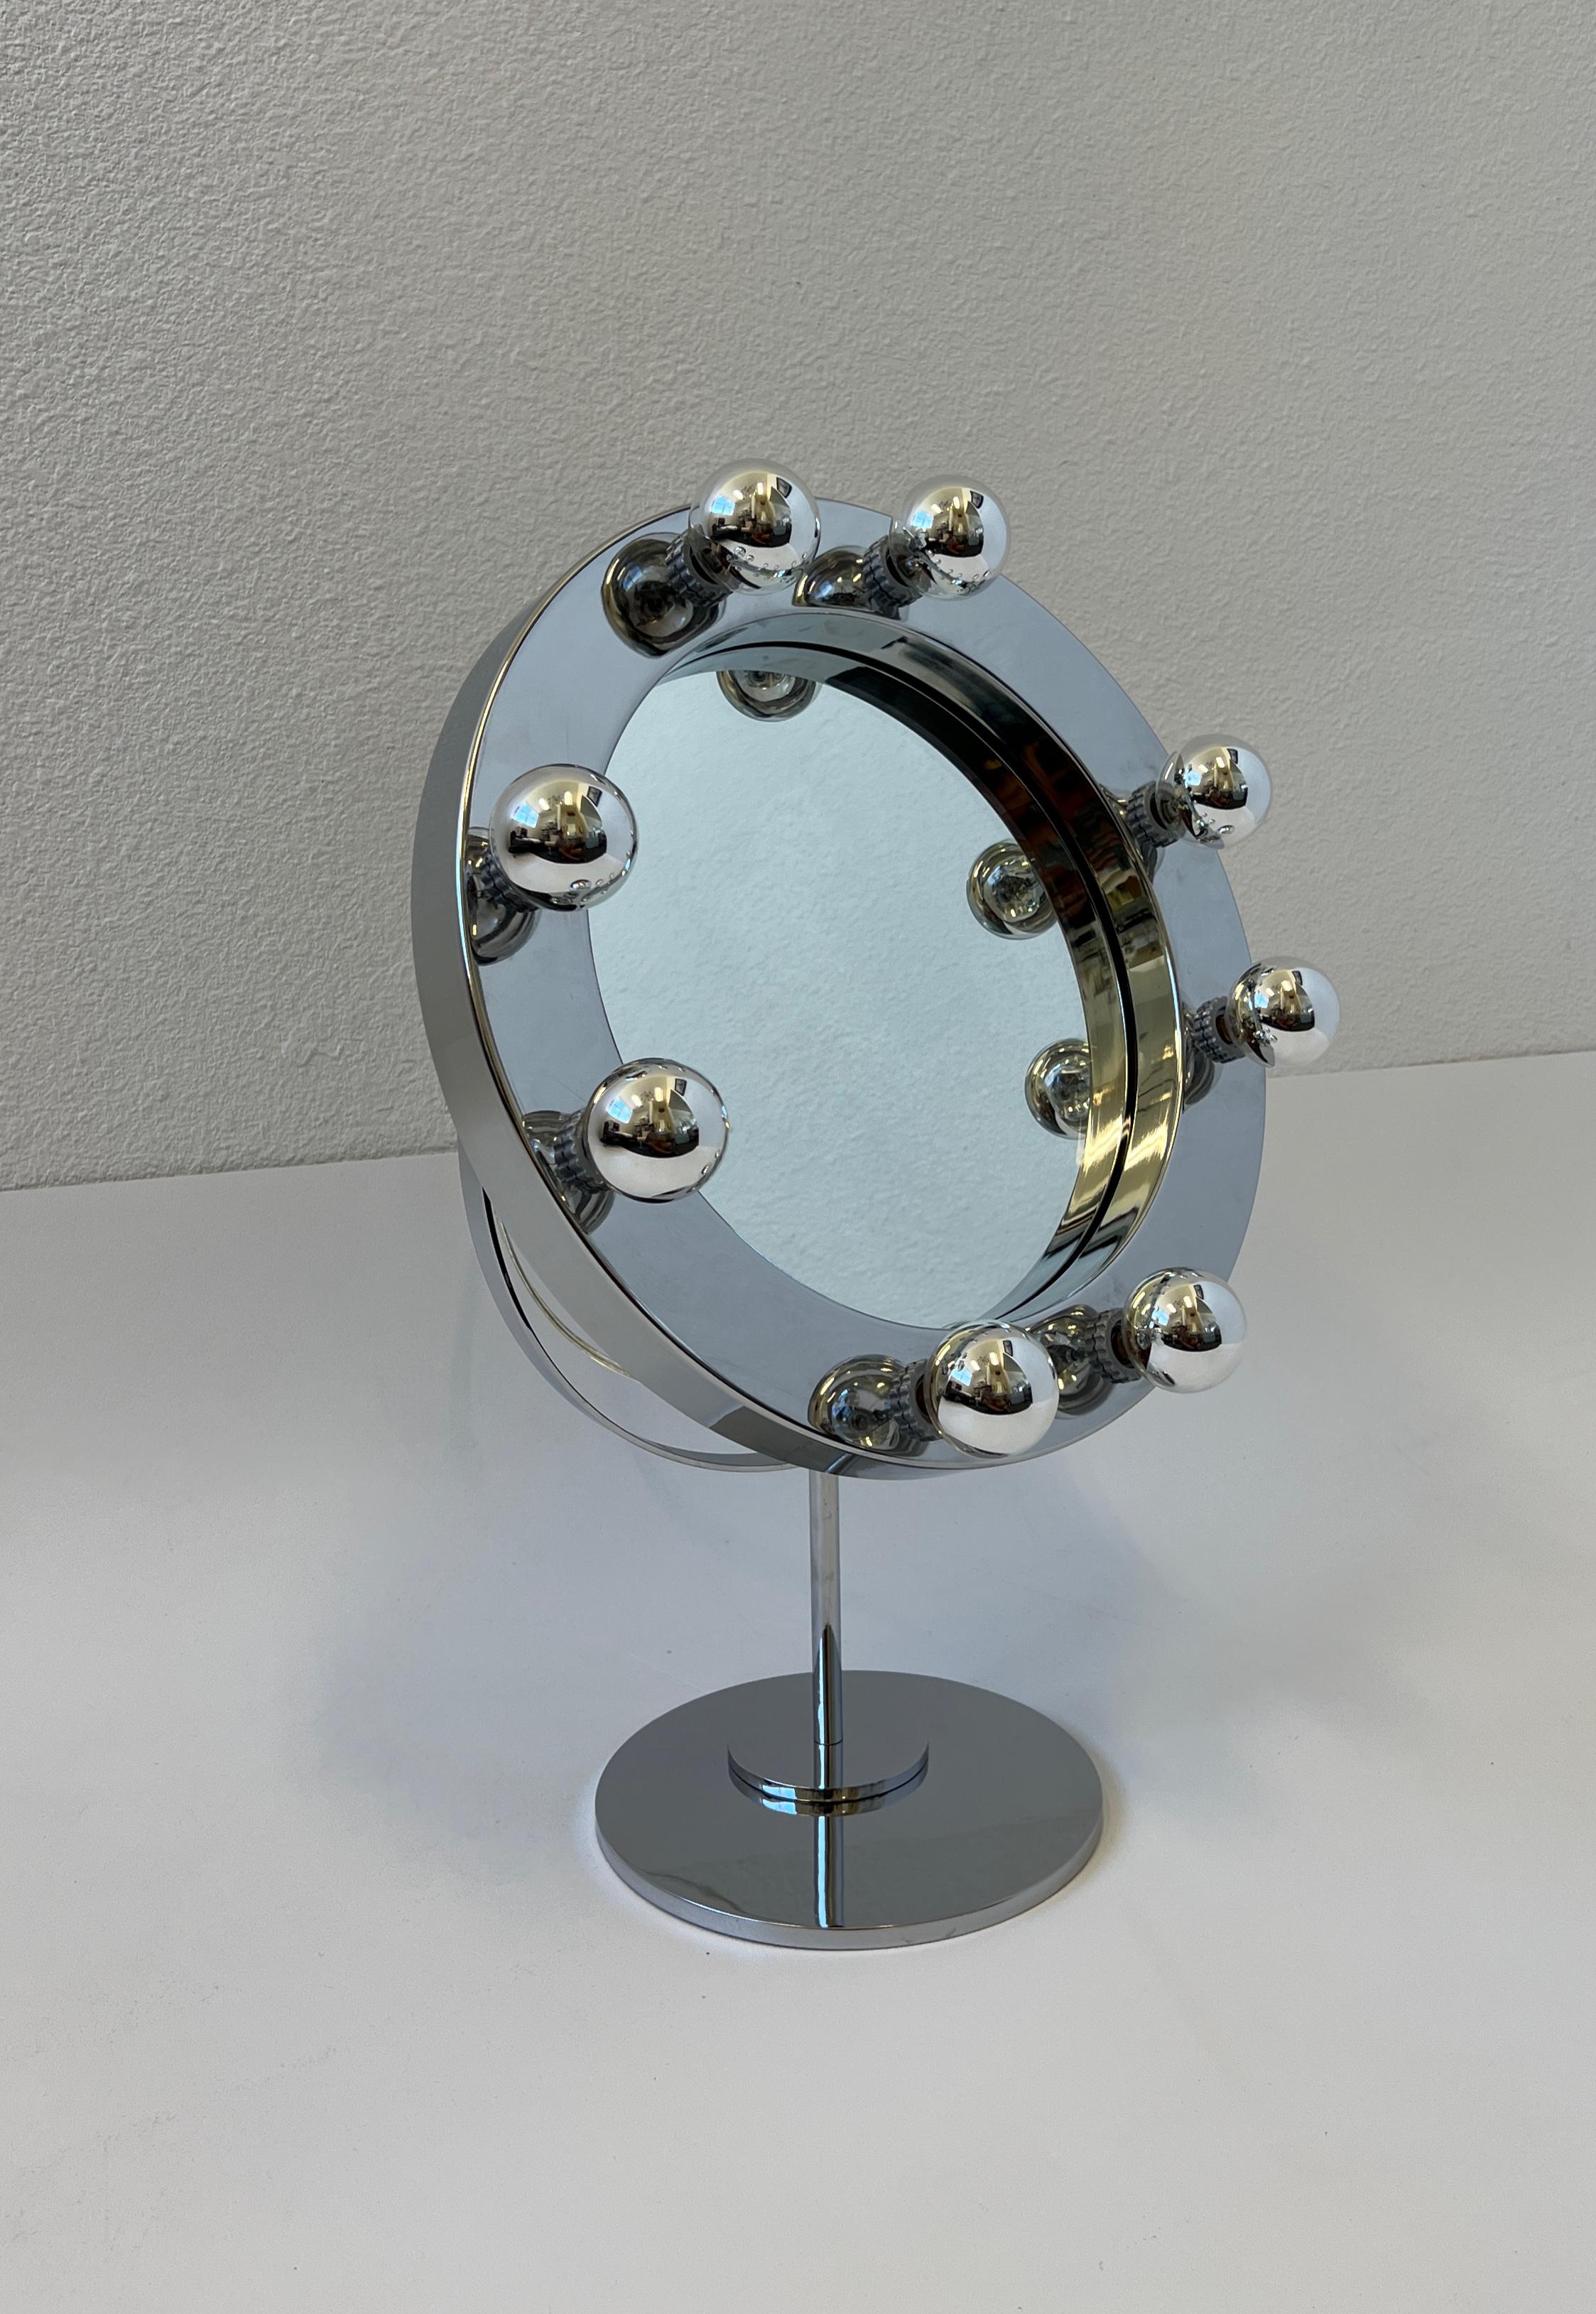 Glamouröser O Vanity Spiegel, entworfen von dem bekannten amerikanischen Designer Charles Hollis Jones in den 1960er Jahren. Der Spiegel ist verstellbar, neu verkabelt und hat einen eingebauten Dimmer auf der Rückseite. Für acht verchromte